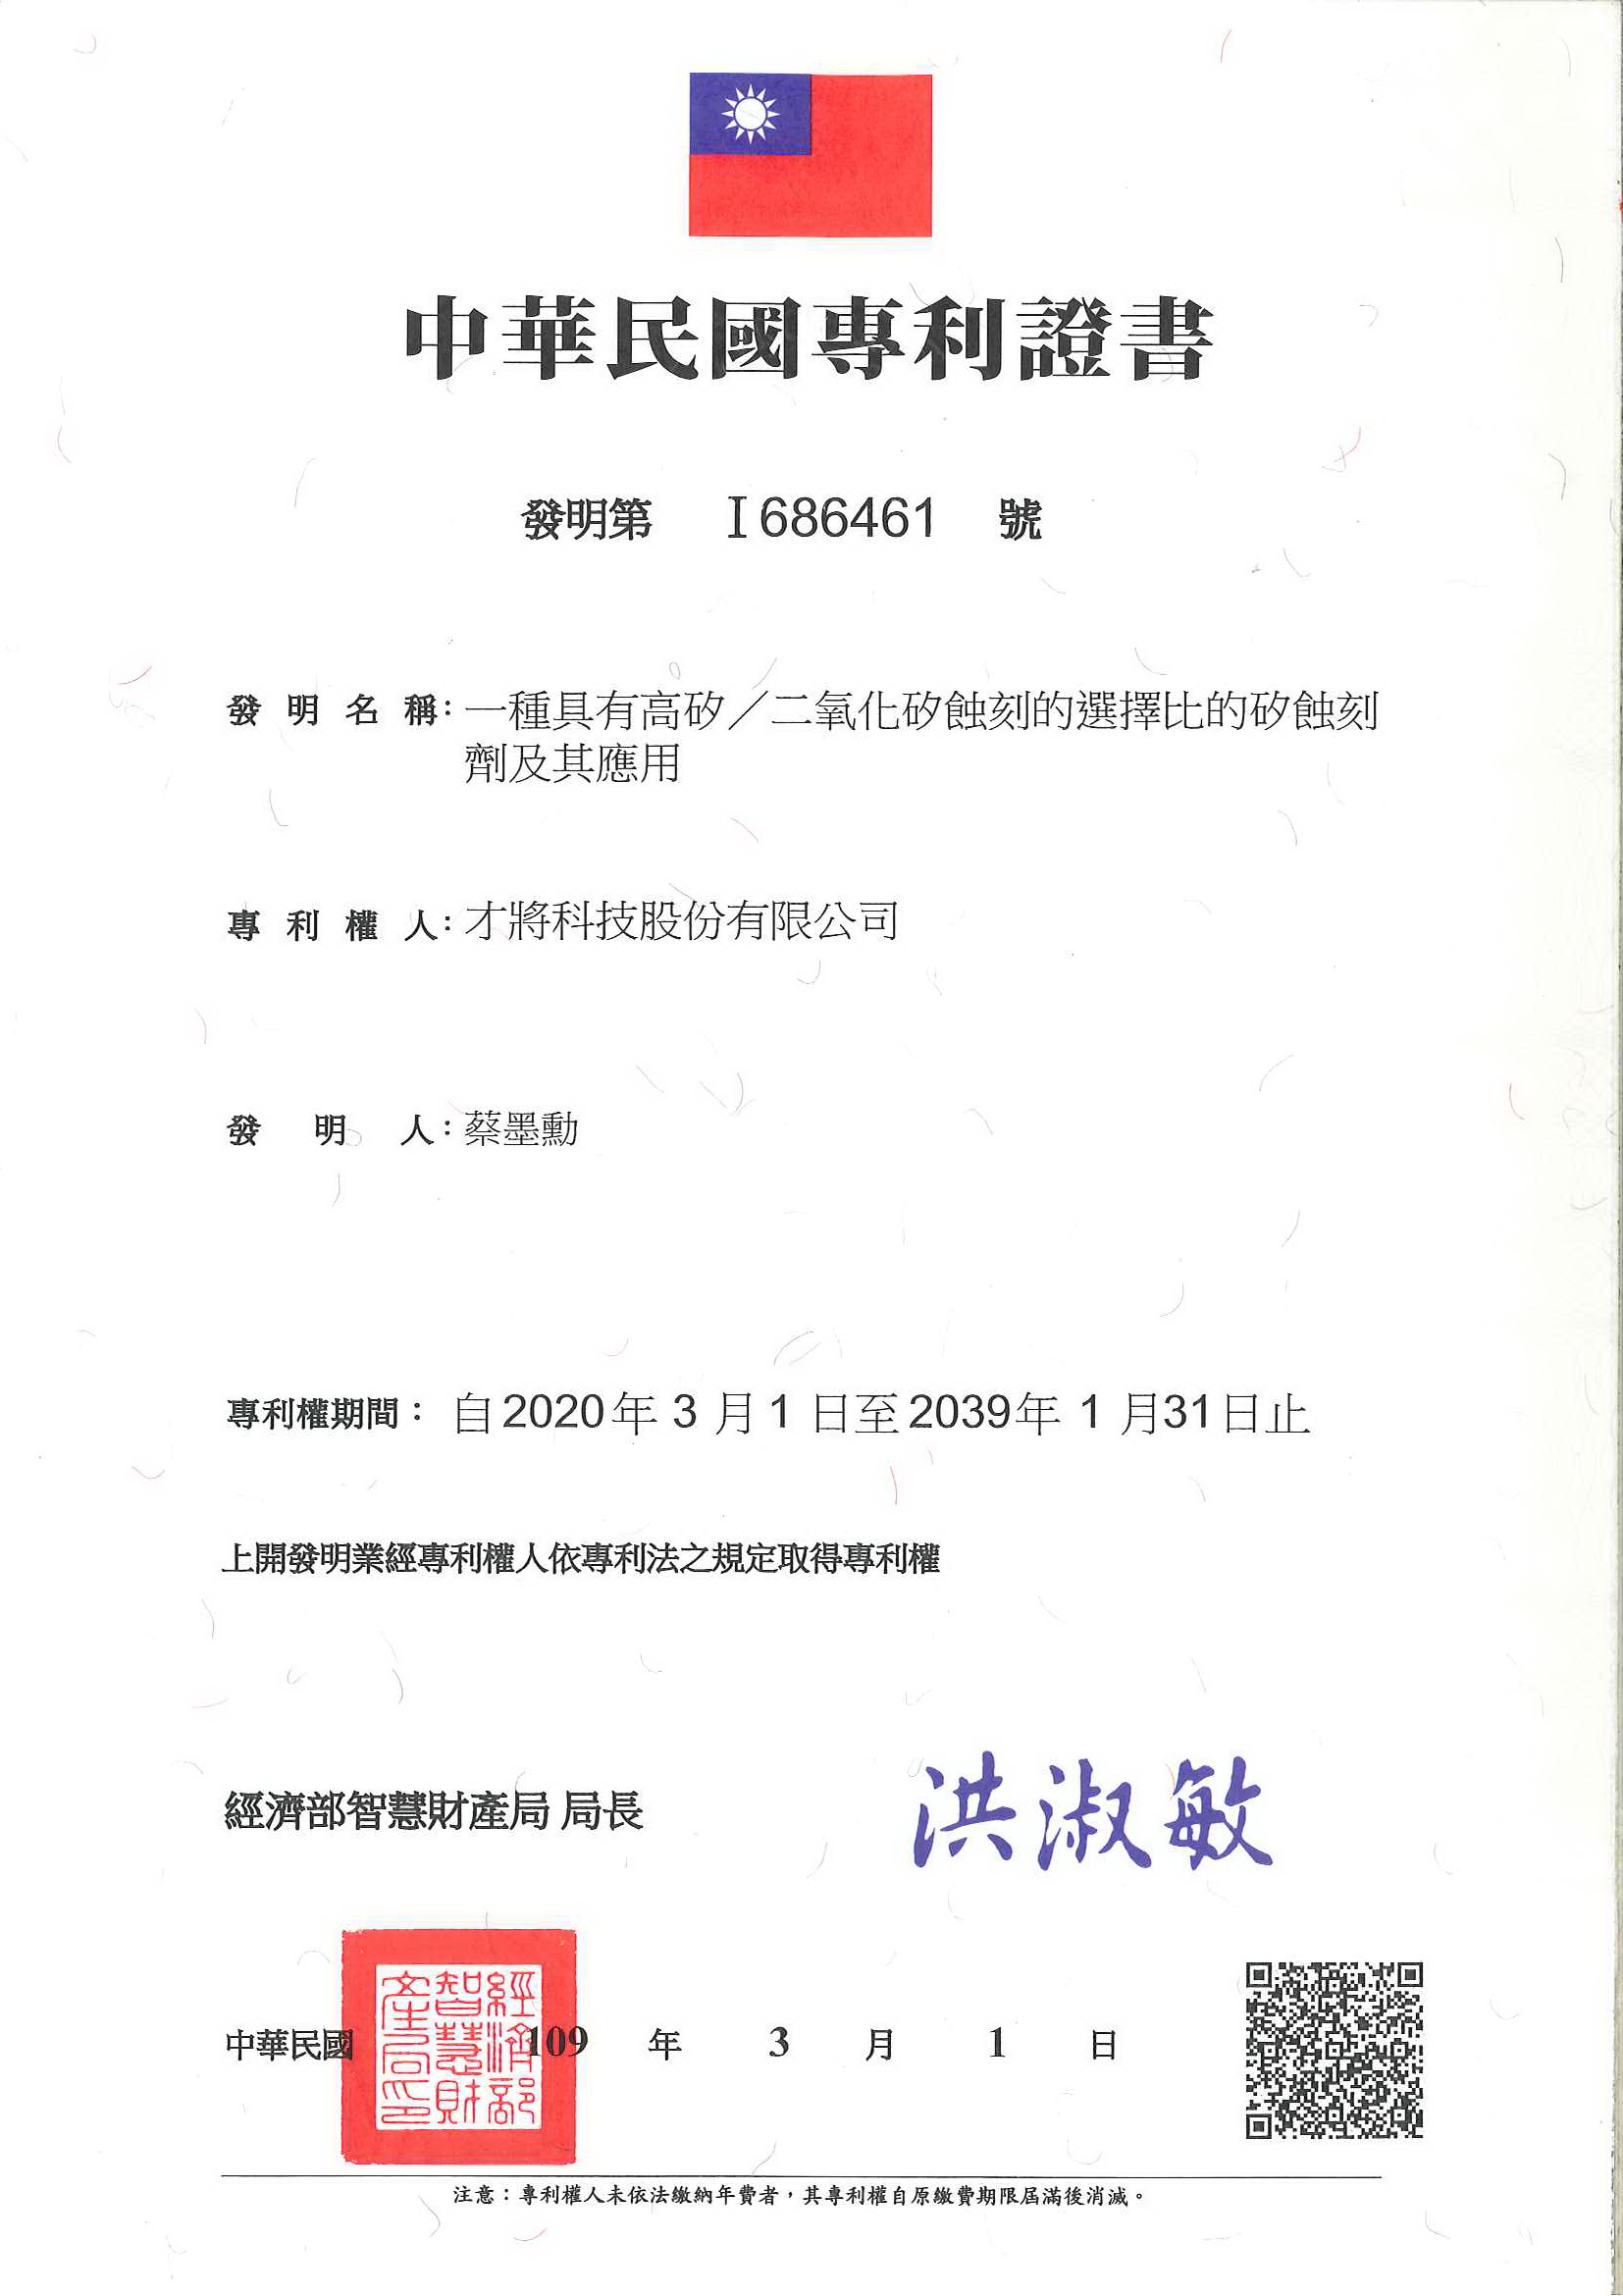 此為中華民國專利證書，幫助客戶申請專利，通過核准